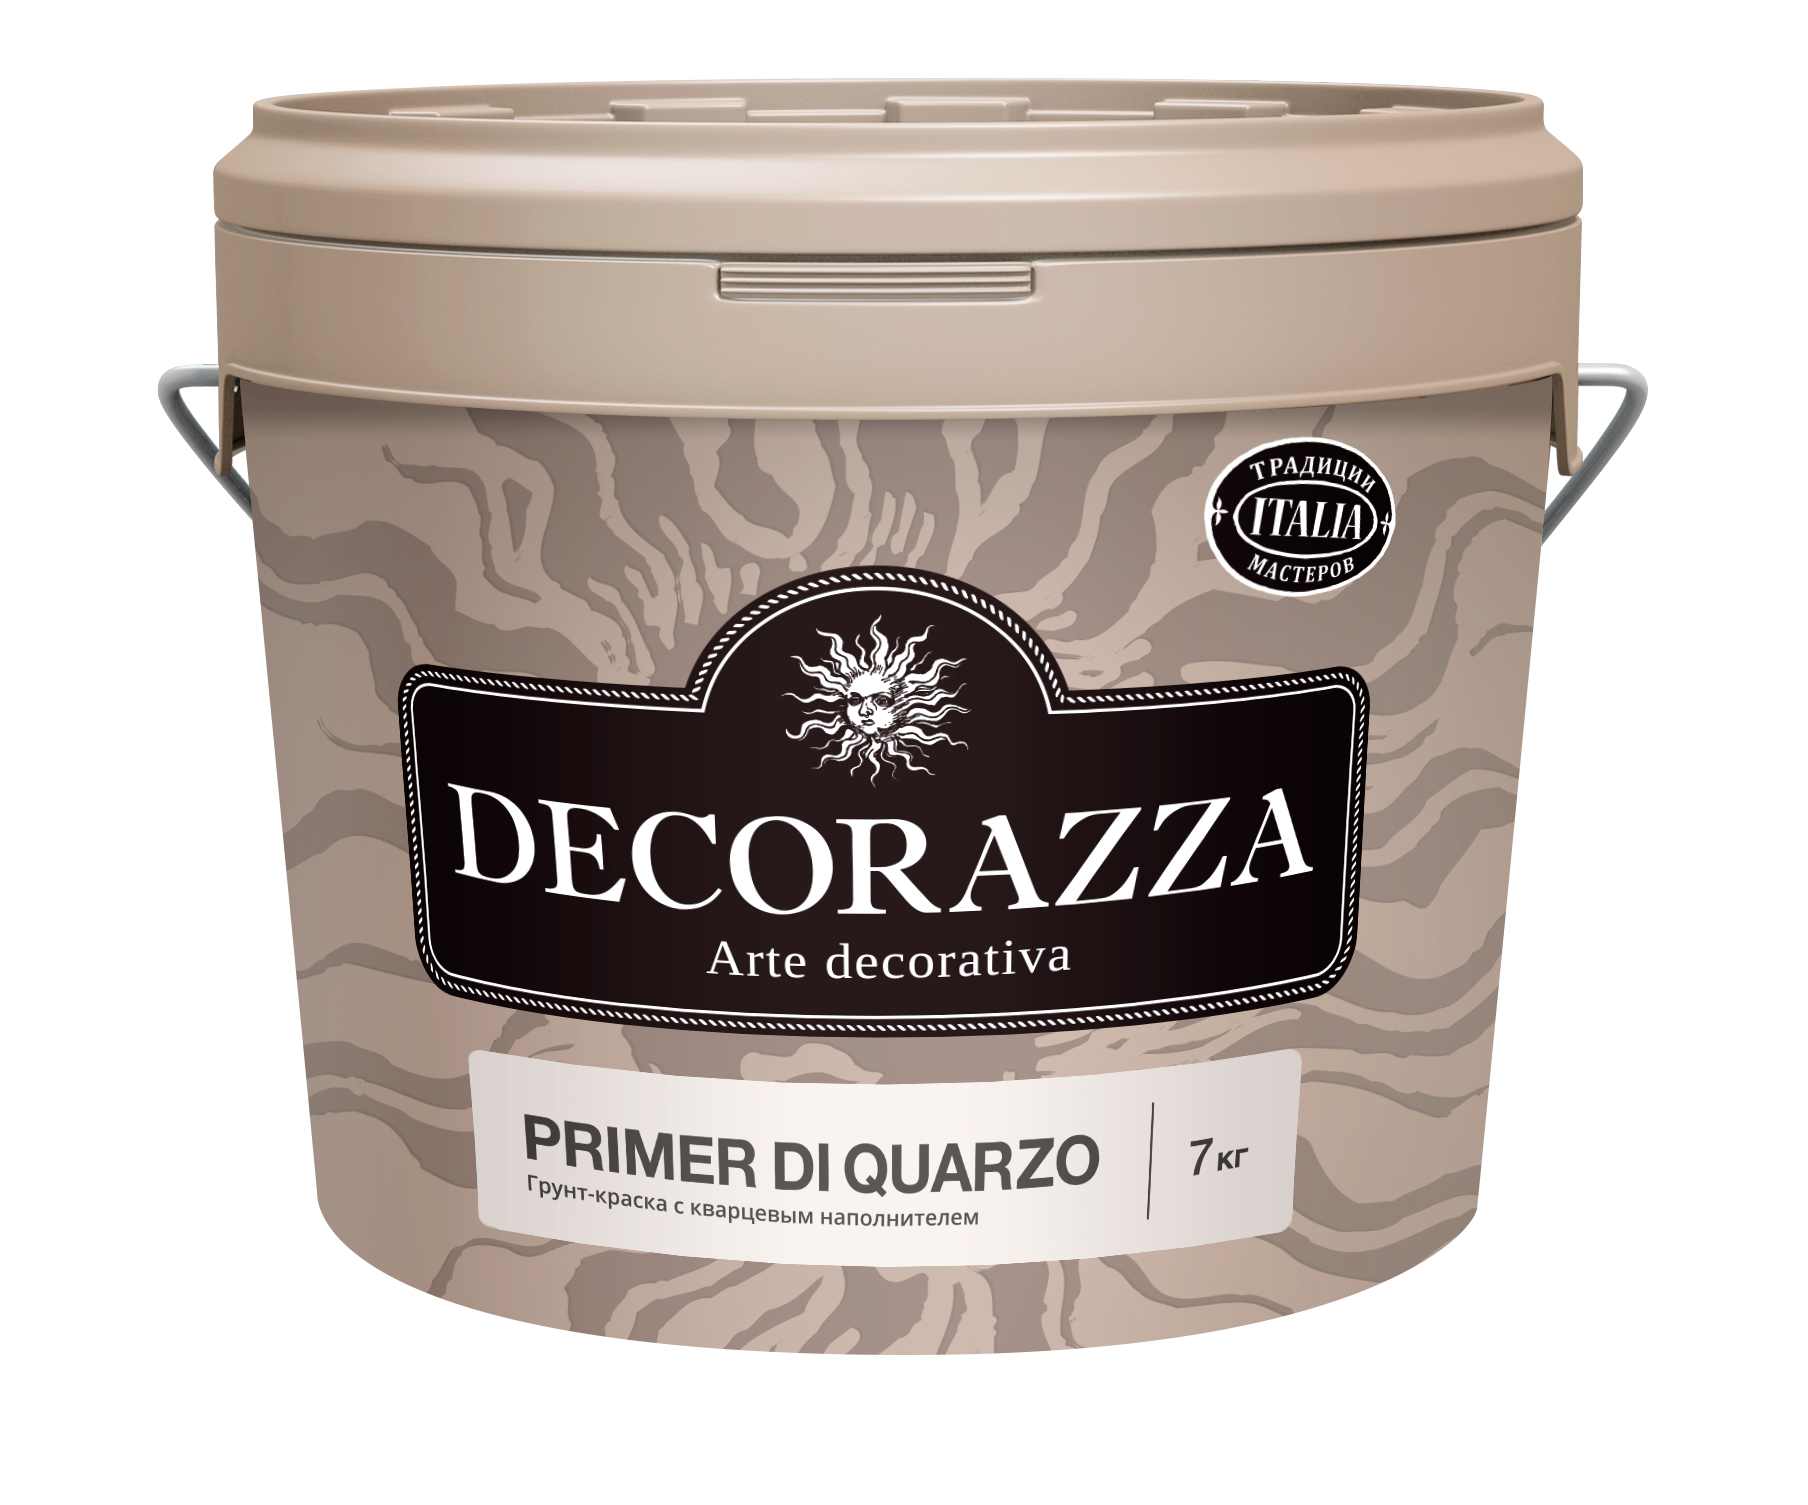 Грунт-краска Decorazza Primer di Quarzo, 7 кг